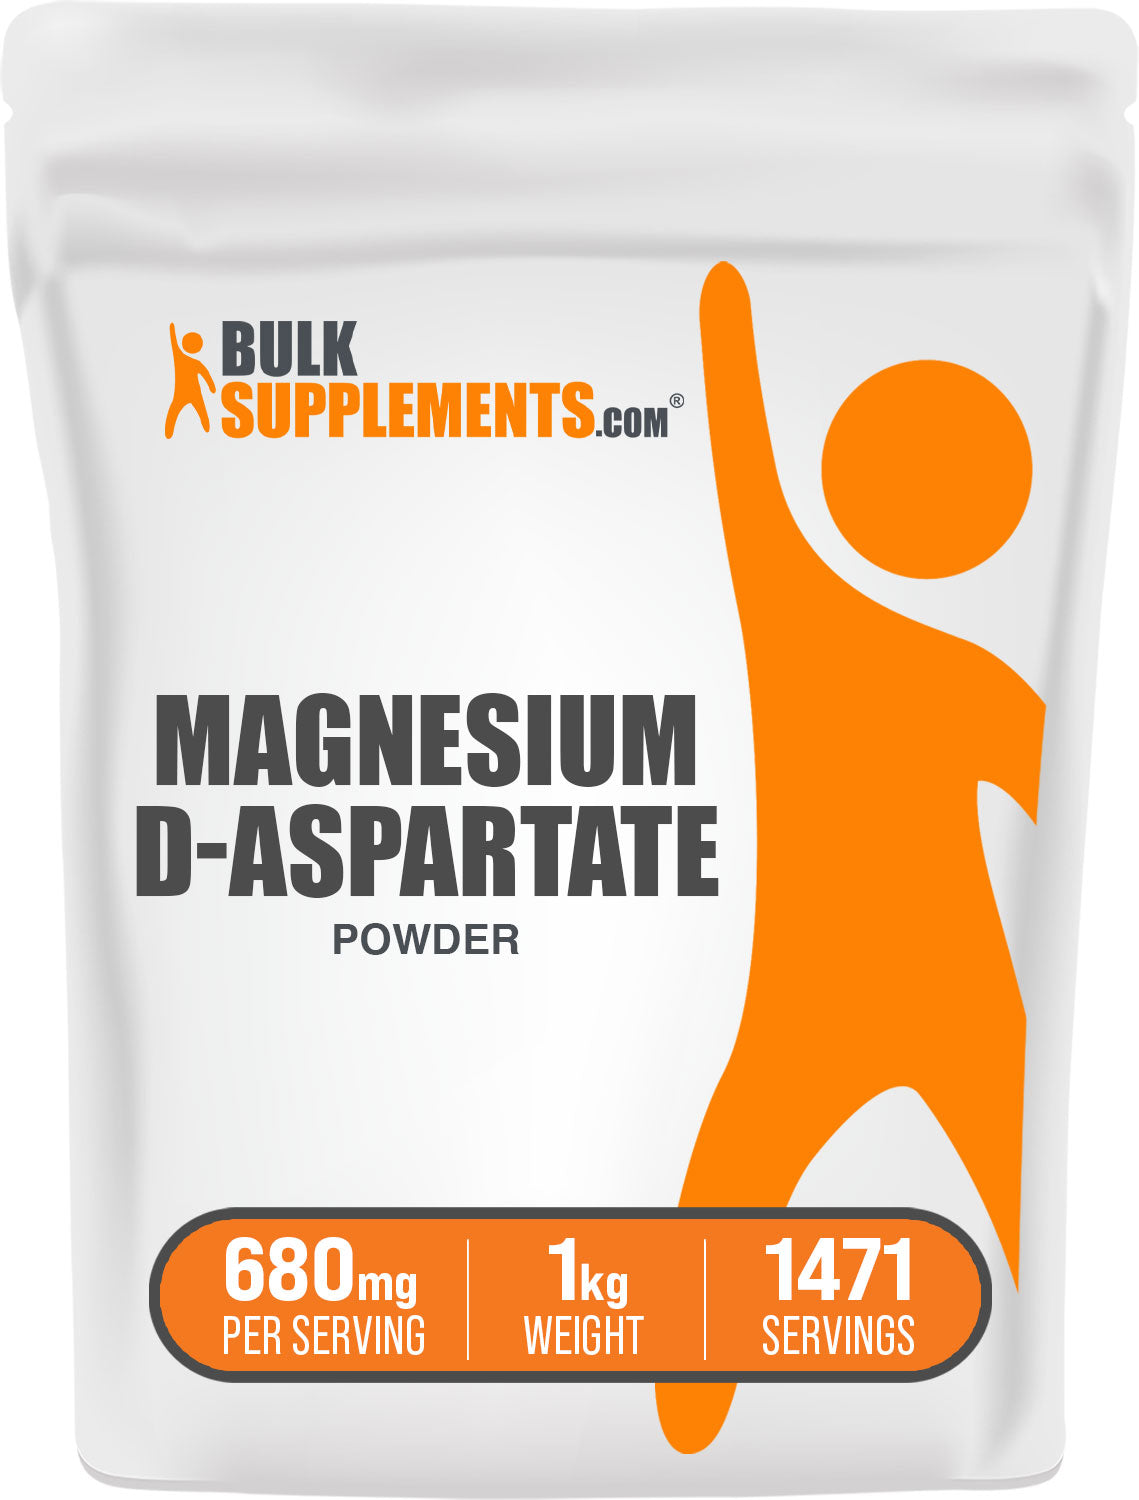 Magnesium D-Aspartate 1kg